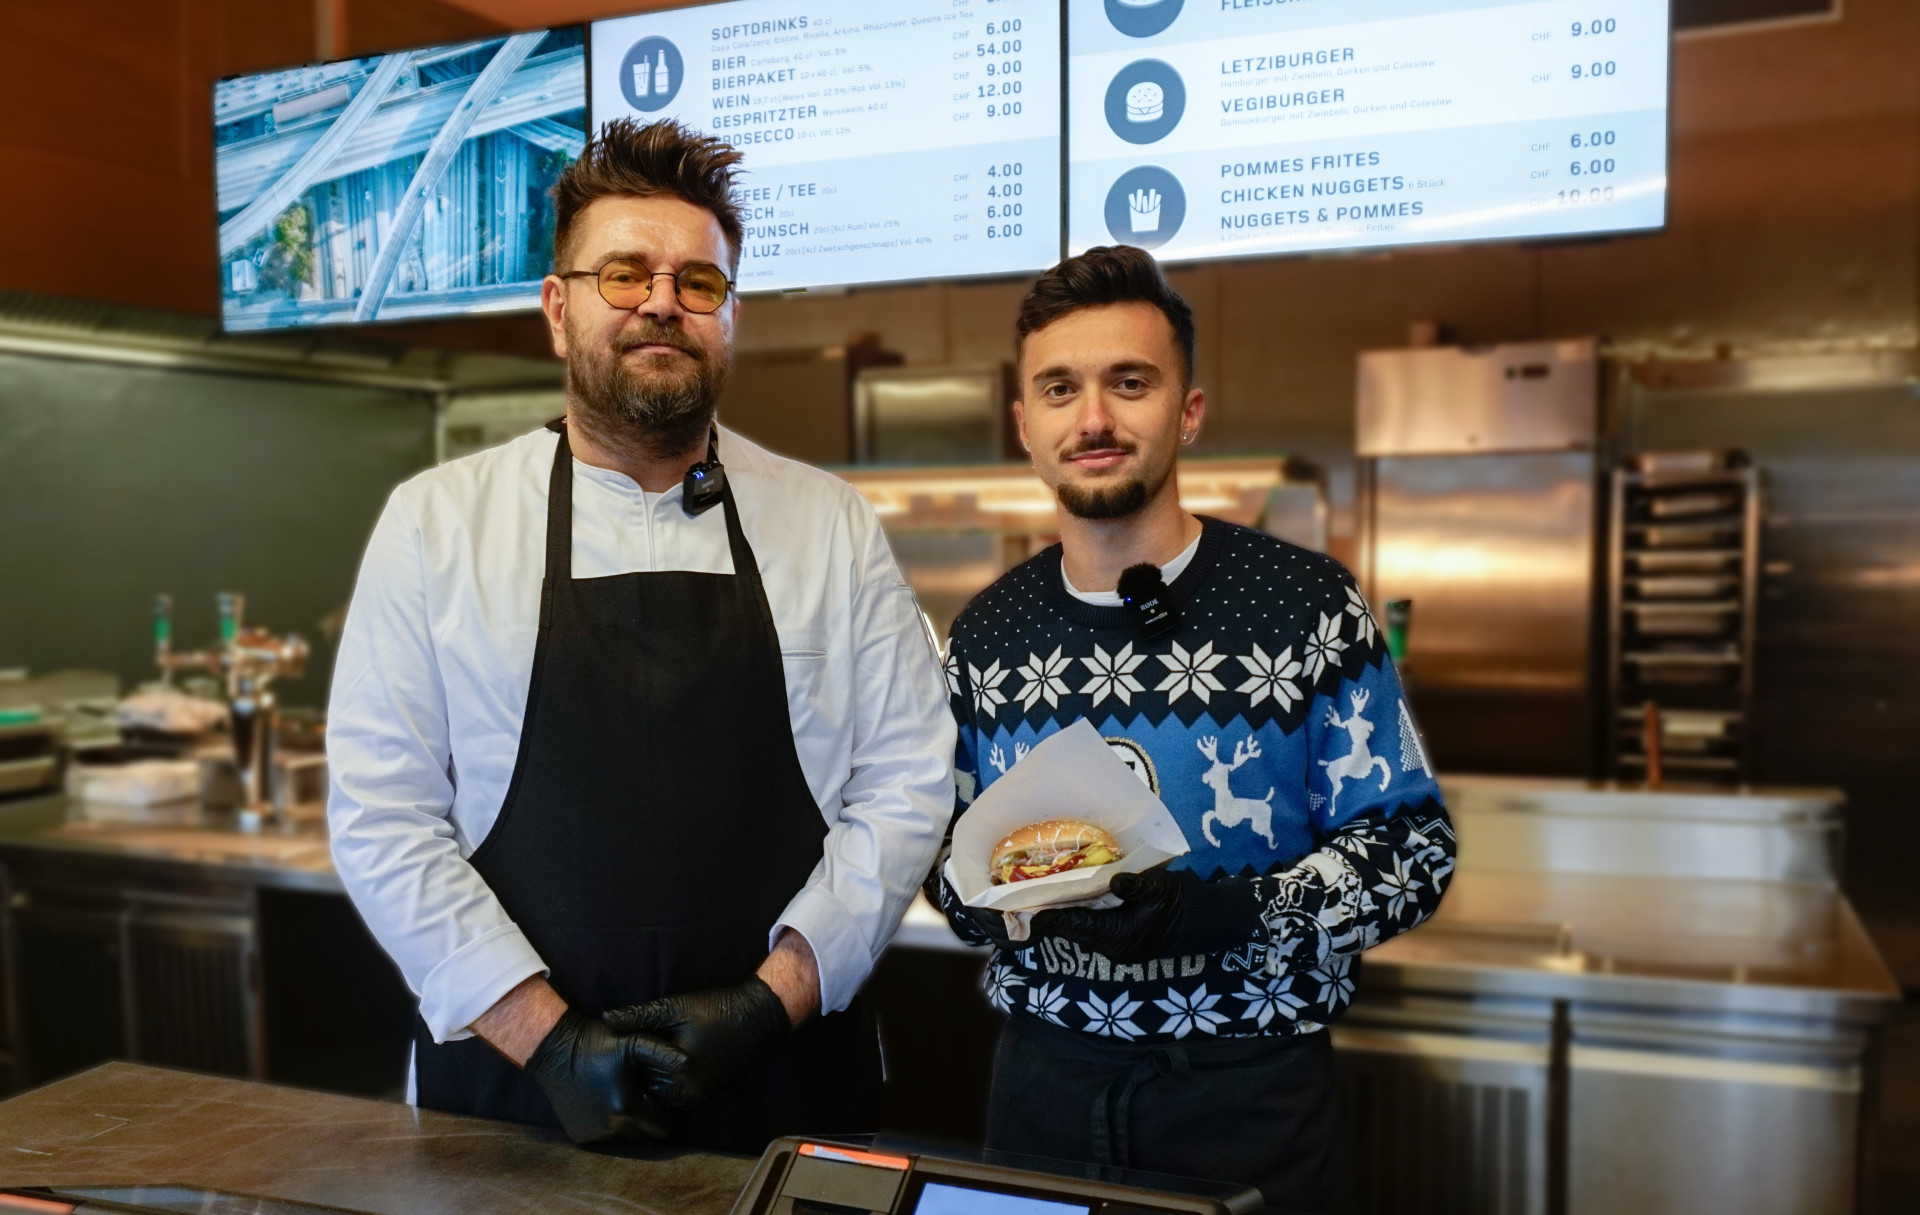 Zwei Männer stehen in einer Essensausgabe mit digitalen Screens im Hintergrund